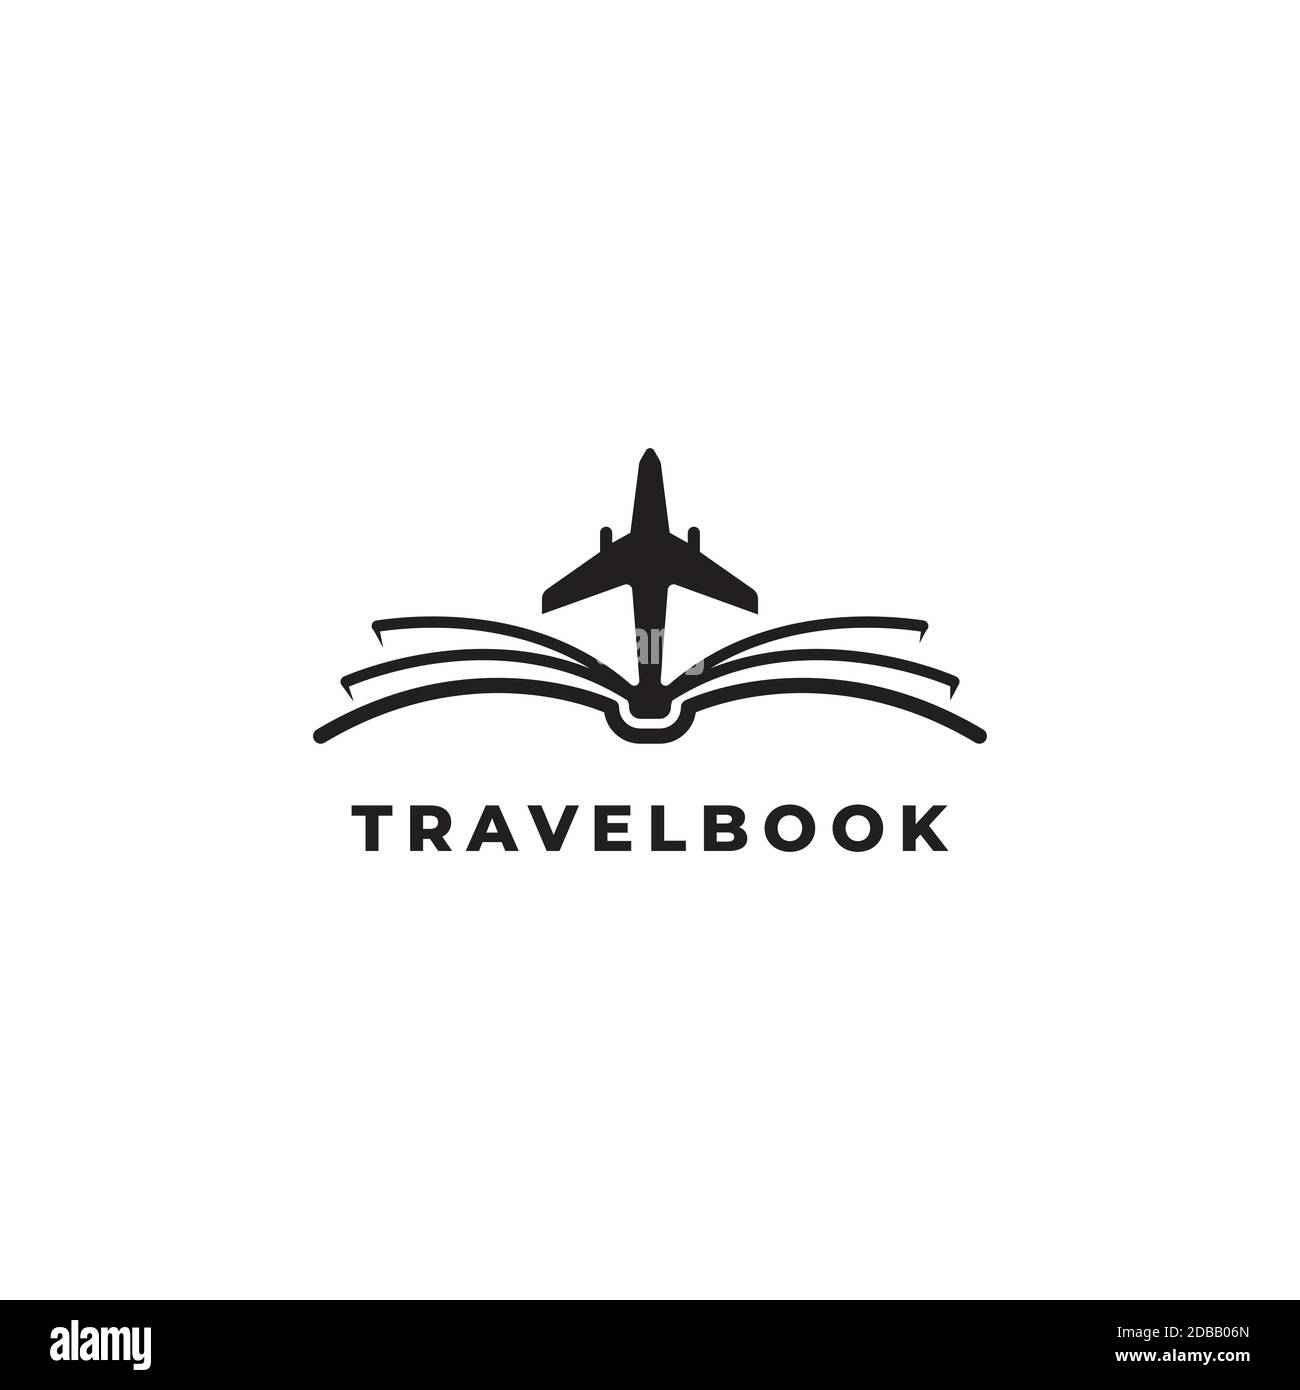 Aviation book logo design symbol vector template Stock Vector